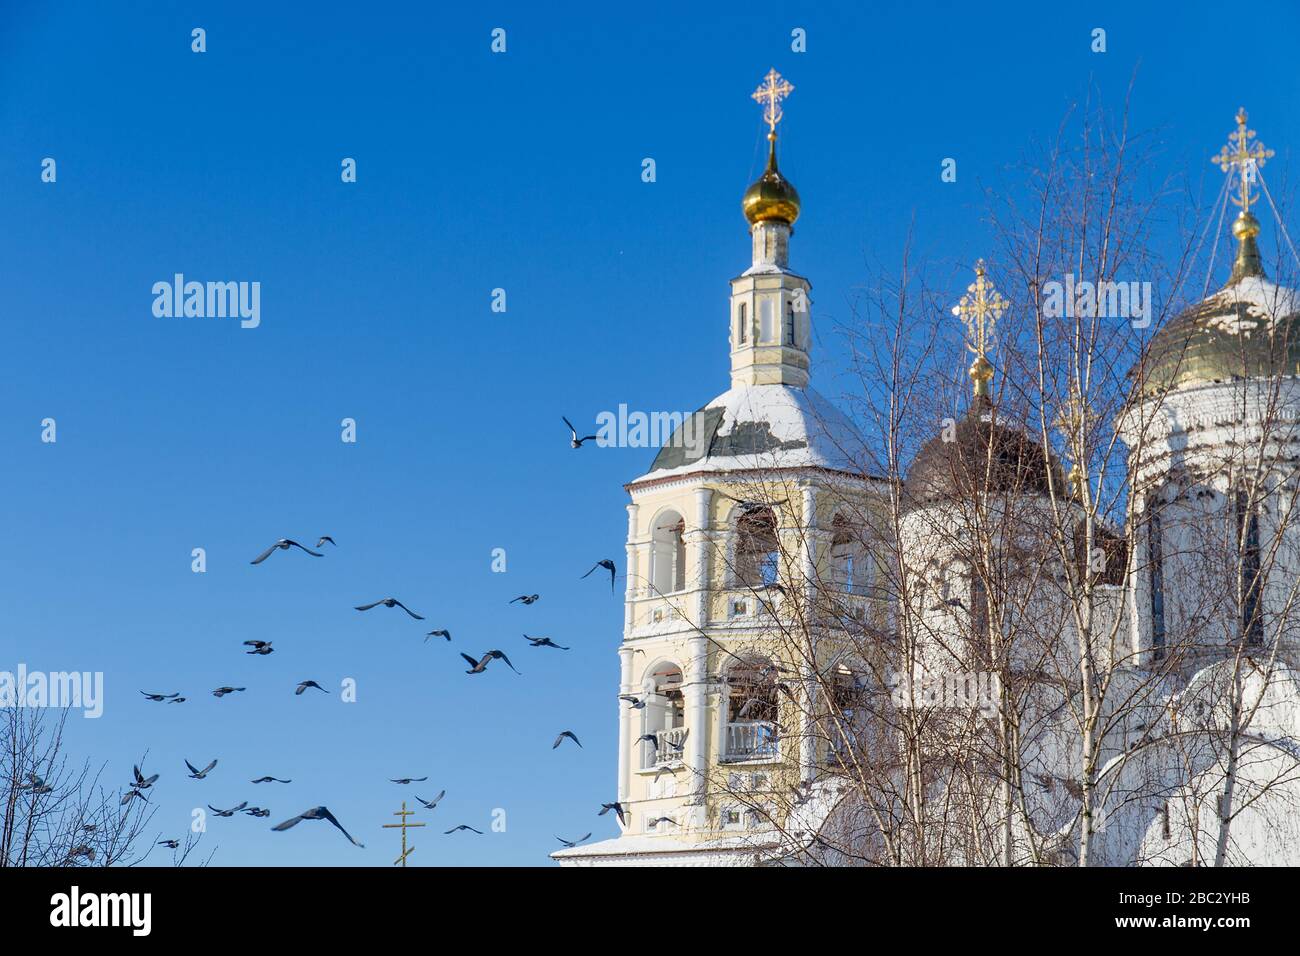 Gregge di piccioni volano contro un monastero russo ortodosso. Foto Stock